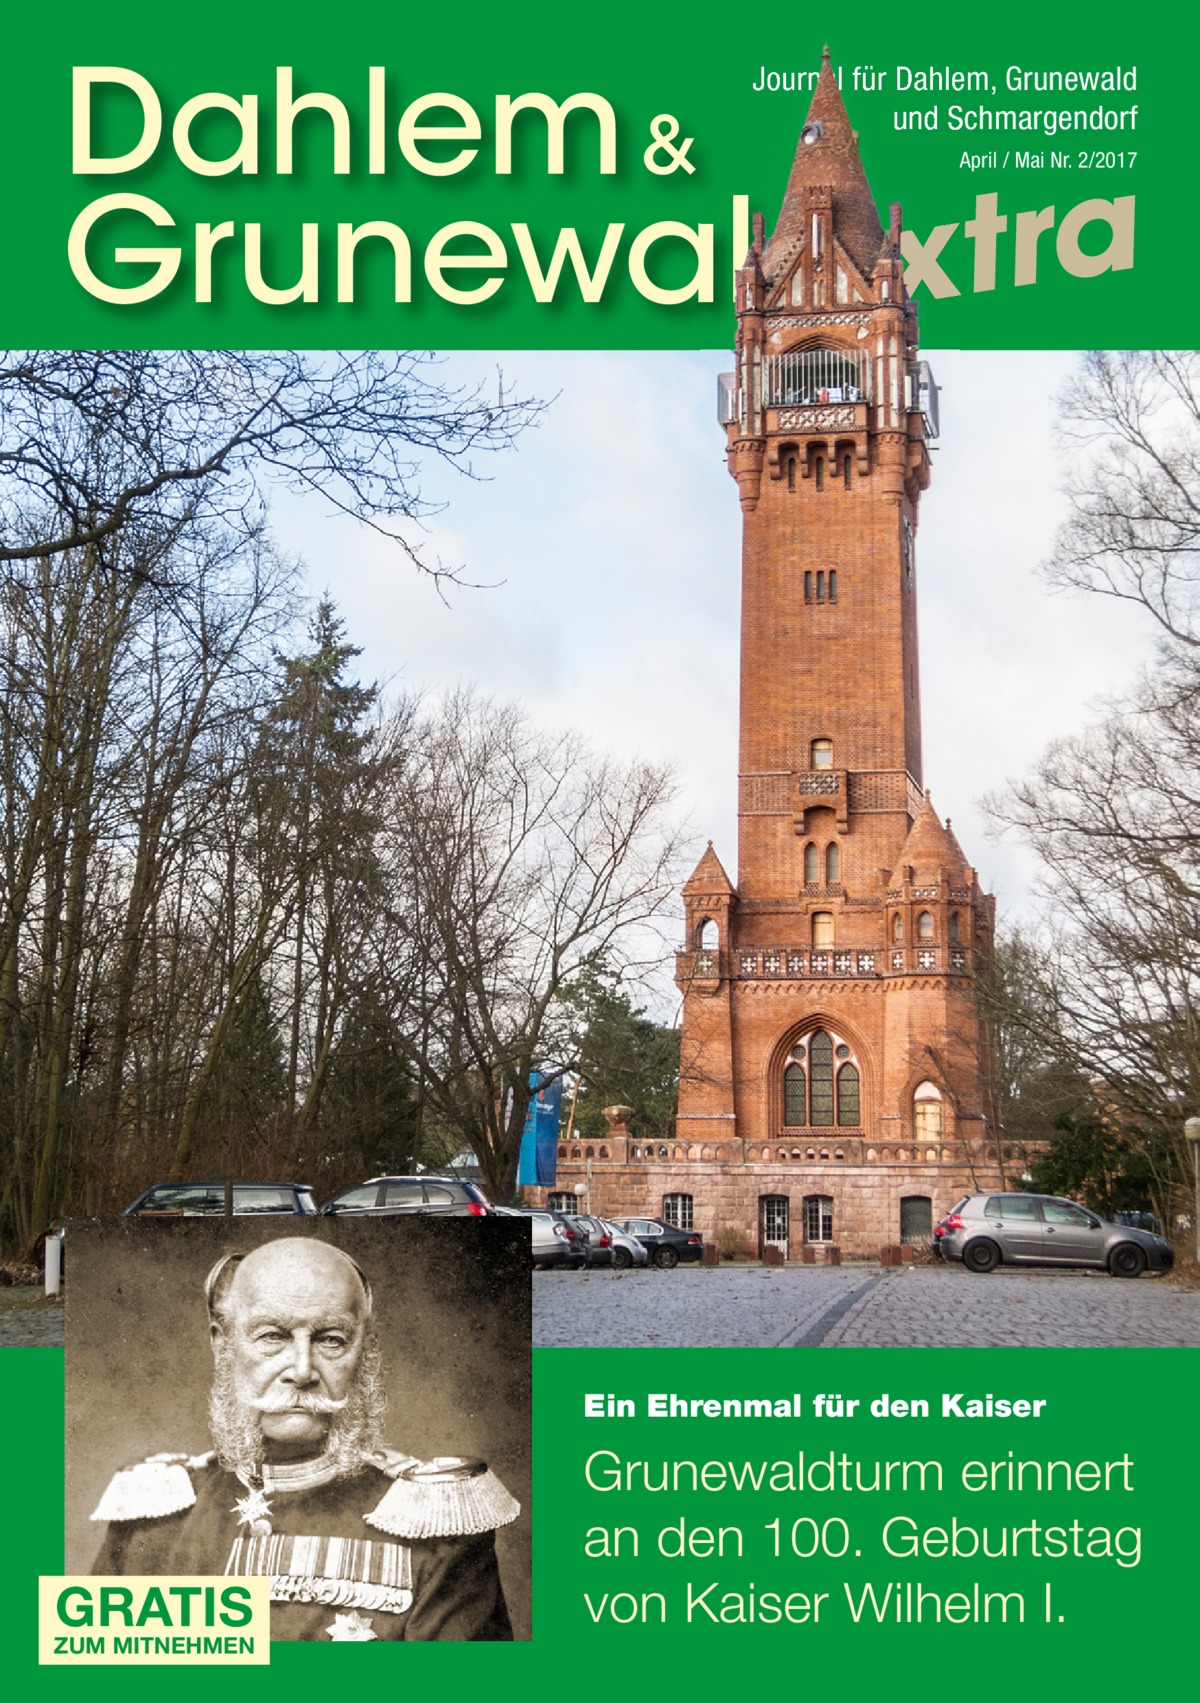 Dahlem & Grunewaldextra Journal für Dahlem, Grunewald und Schmargendorf April / Mai Nr. 2/2017  Ein Ehrenmal für den Kaiser  GRATIS  ZUM MITNEHMEN  Grunewaldturm erinnert an den 100. Geburtstag von Kaiser Wilhelm I.